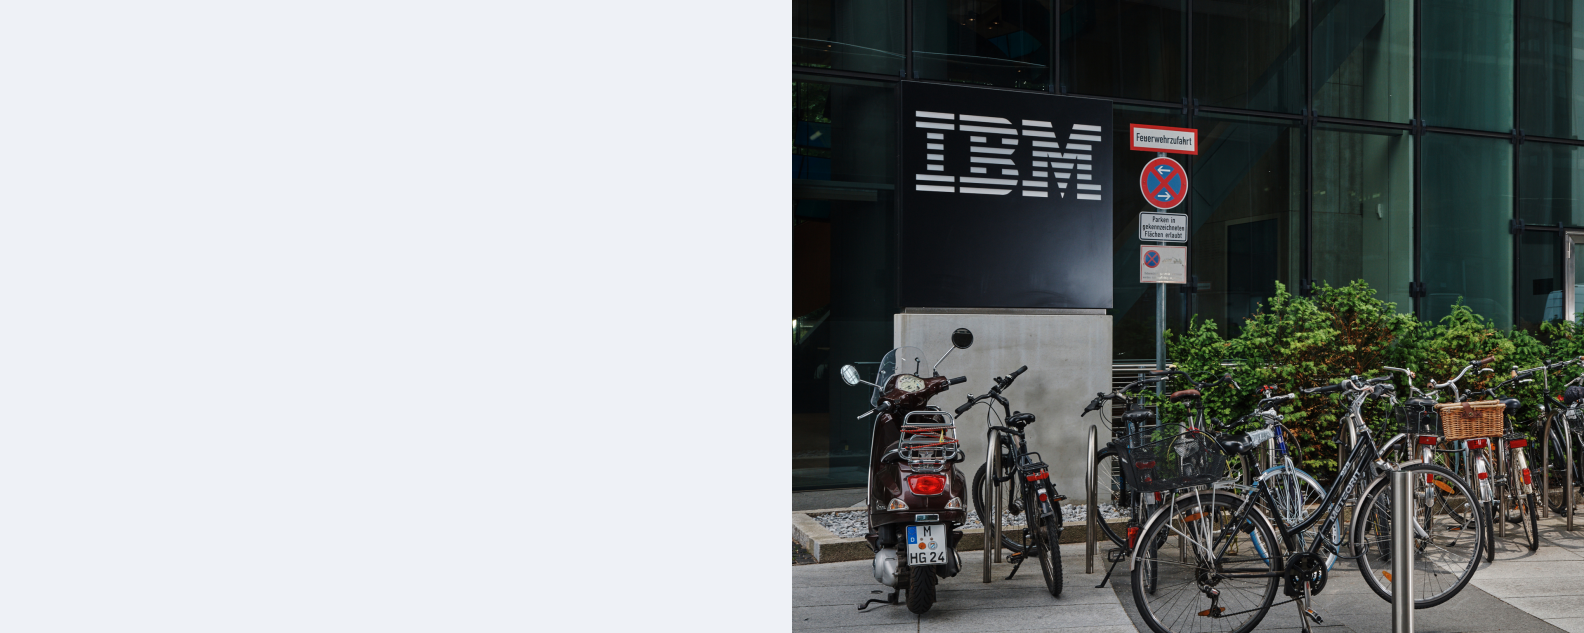 IBM Munich - extérieur